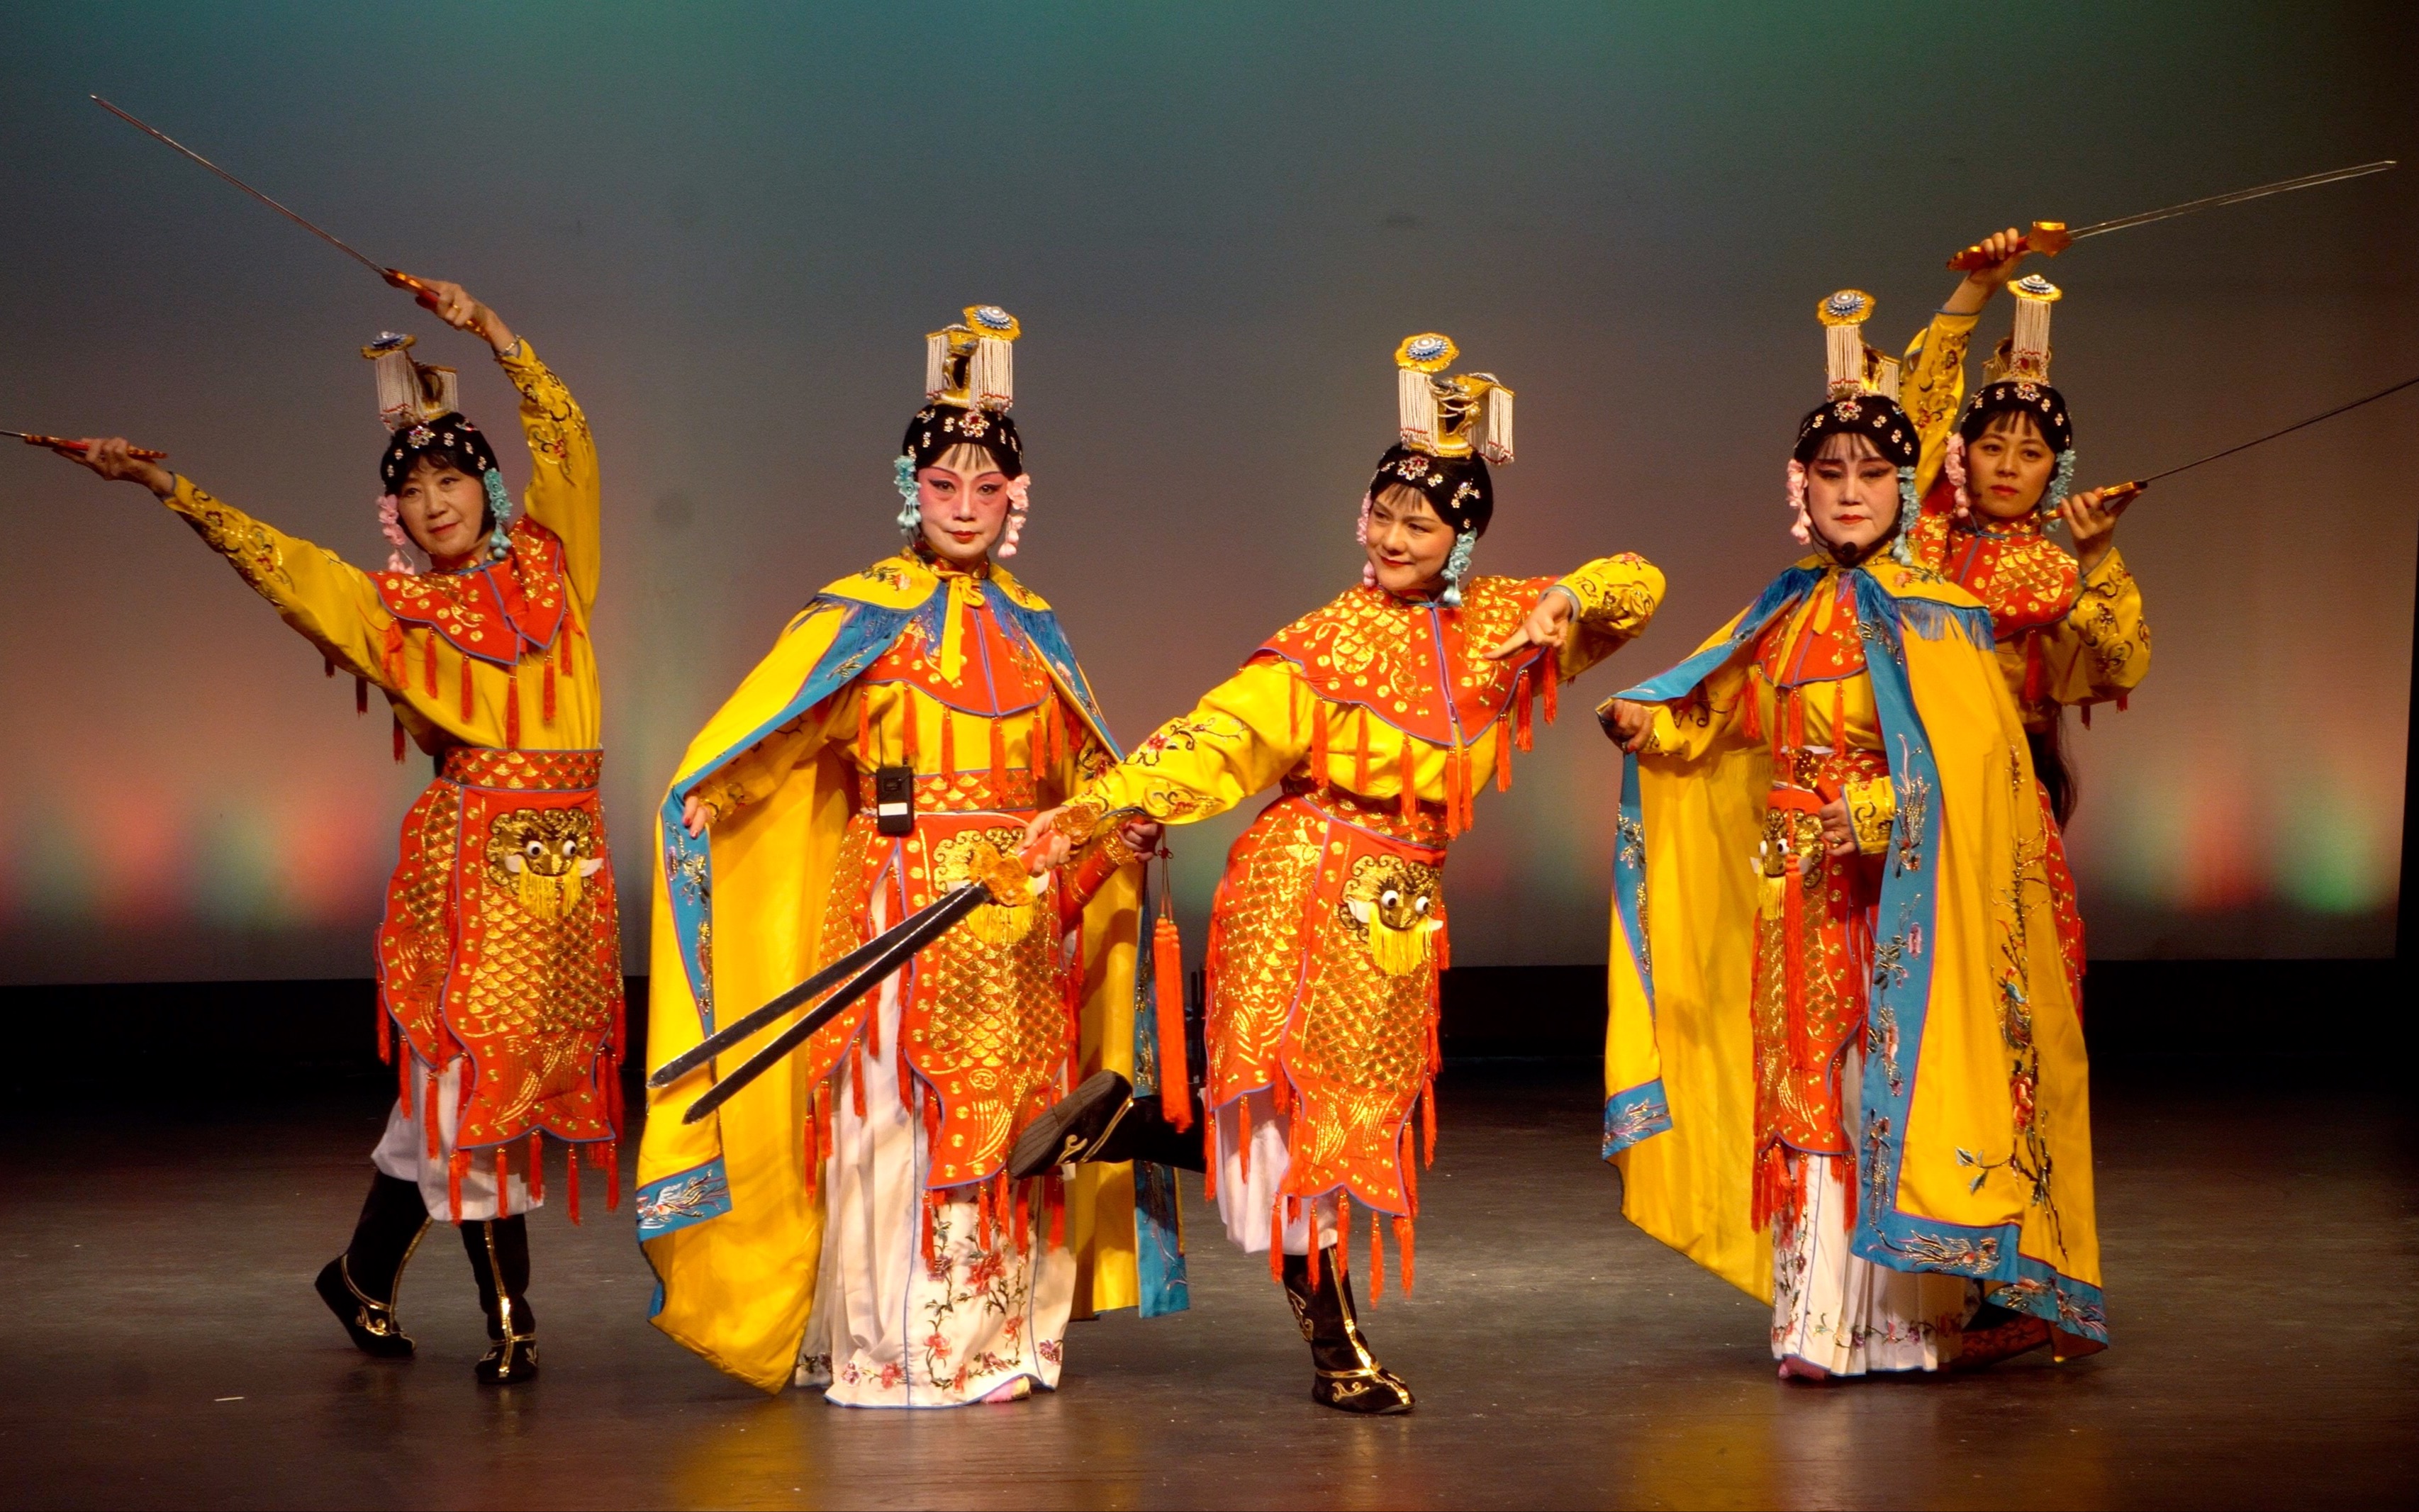 2018年亚城戏社savannah大学演出节目:京剧舞蹈《虞美人》